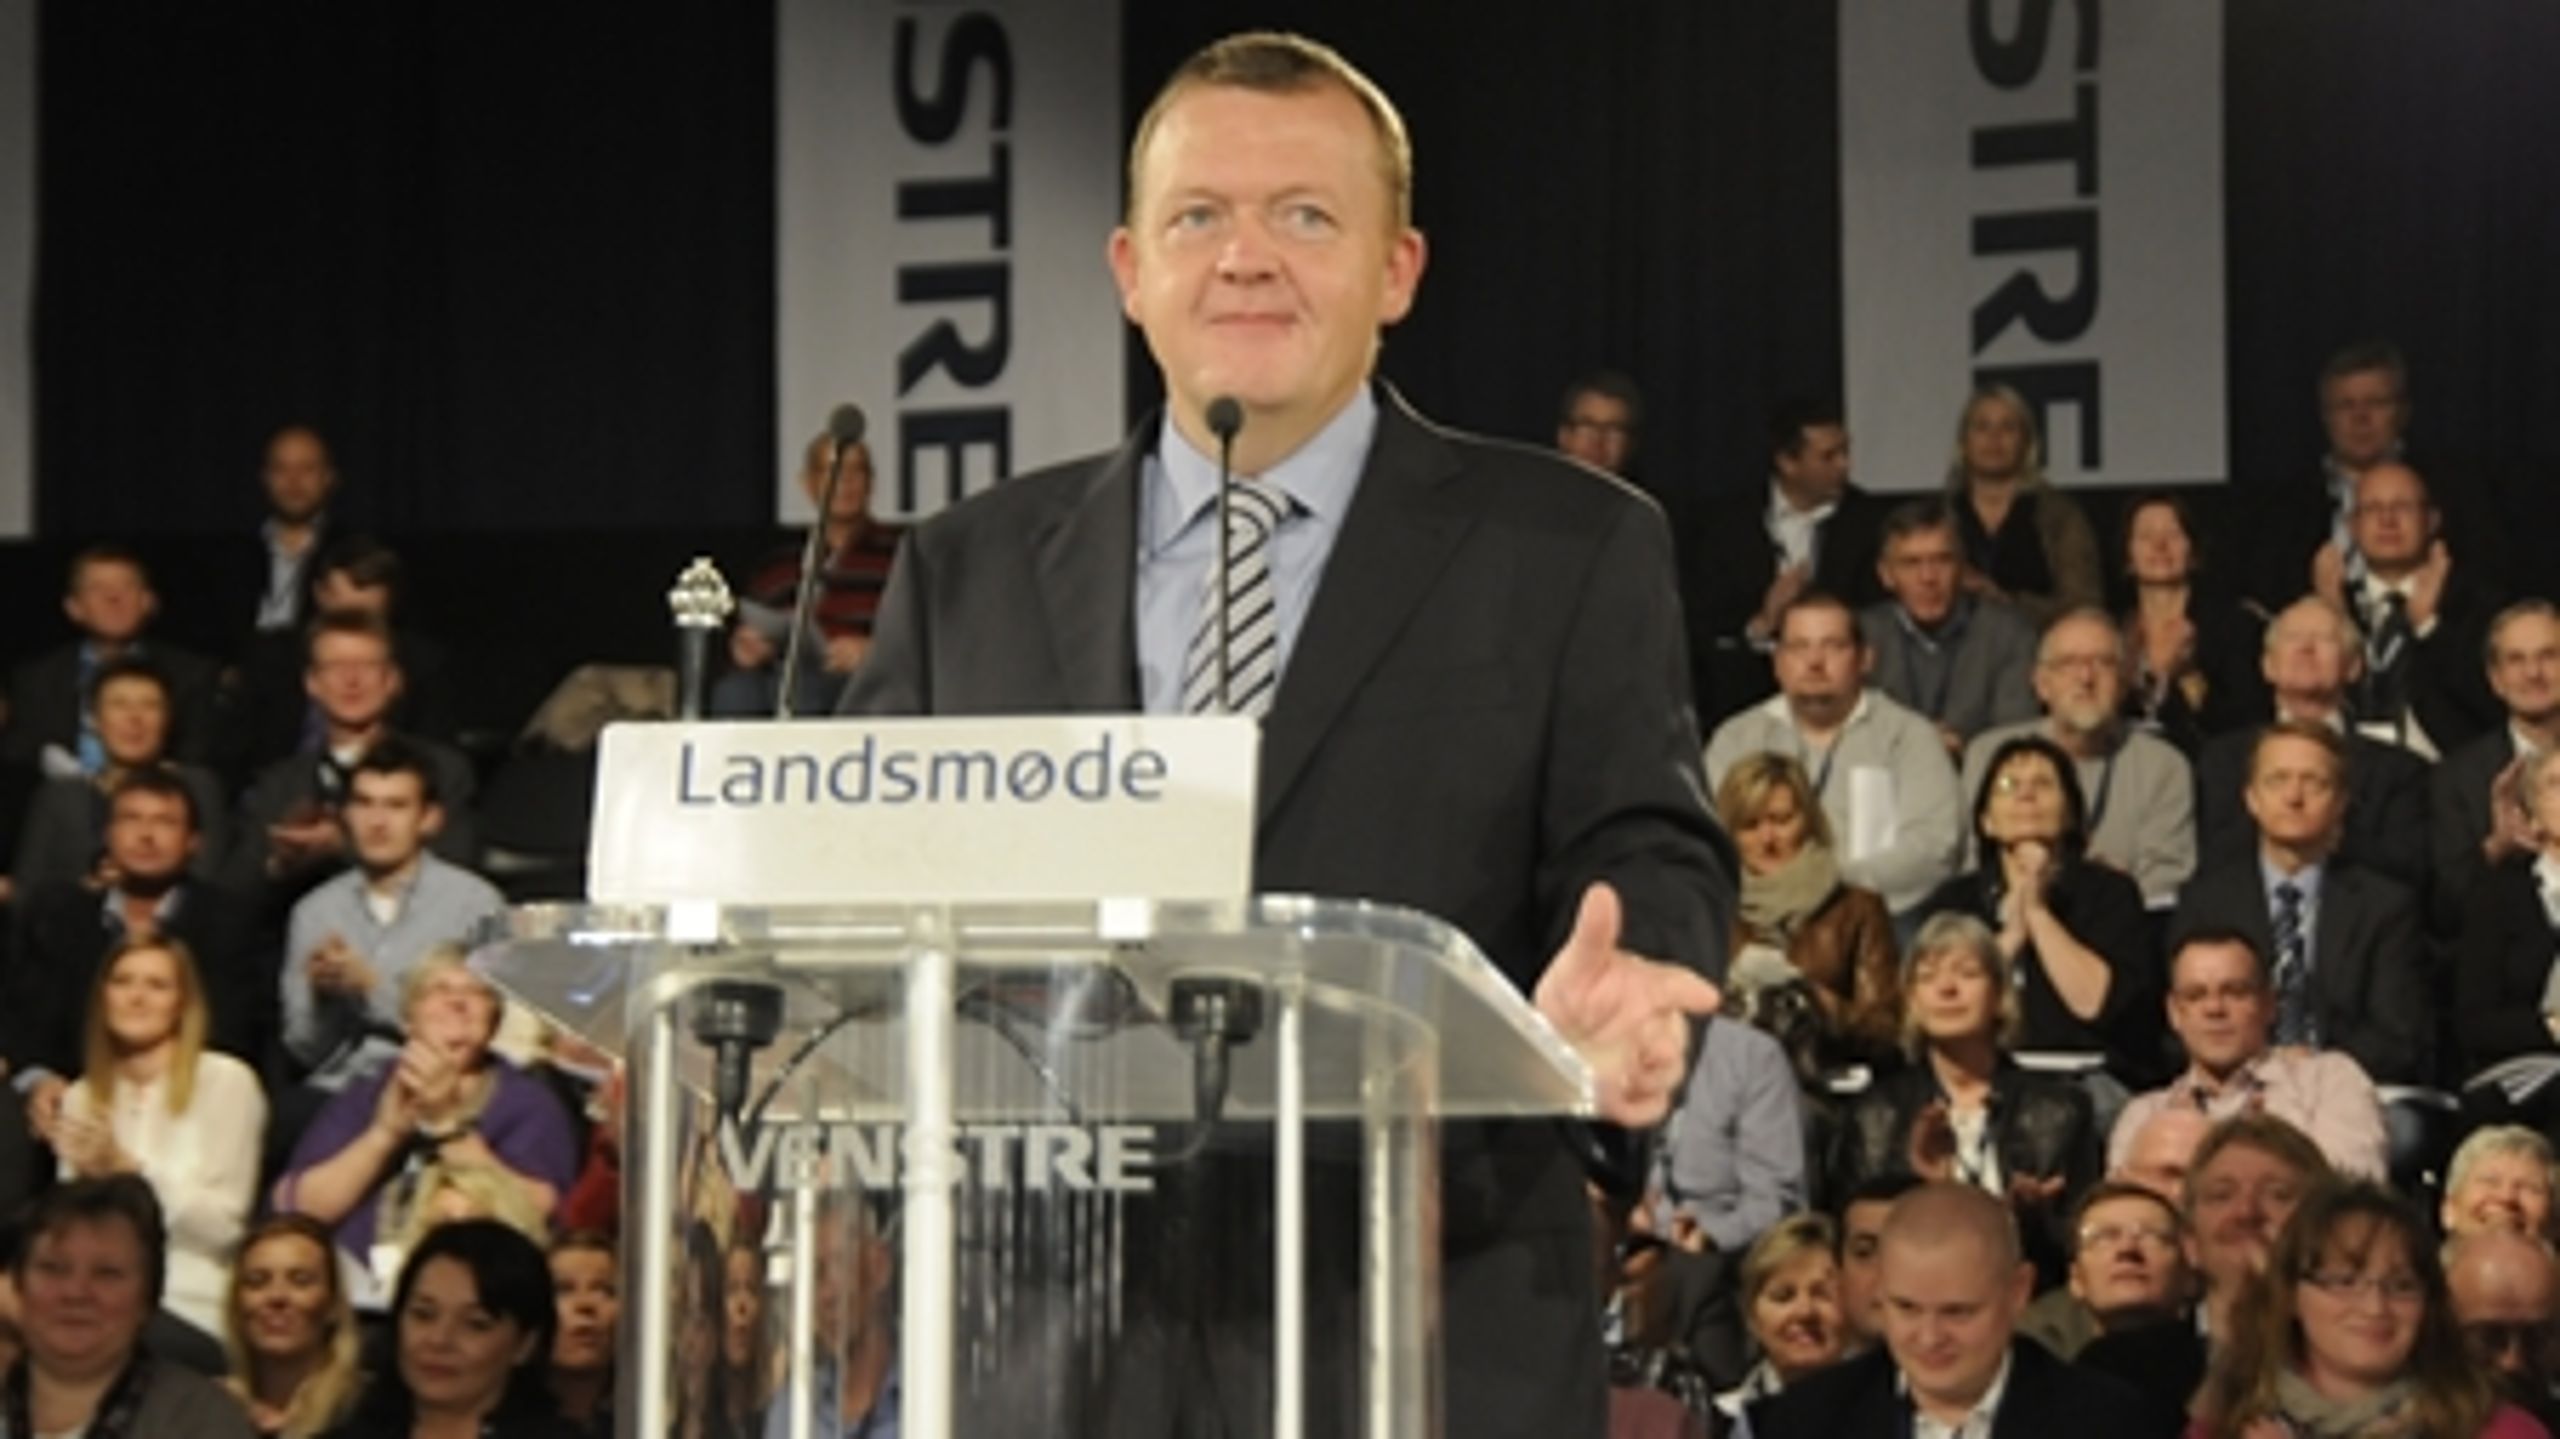 Ifølge vælgerne er Lars Løkke Rasmussen formand for landets mest EU-positive parti.